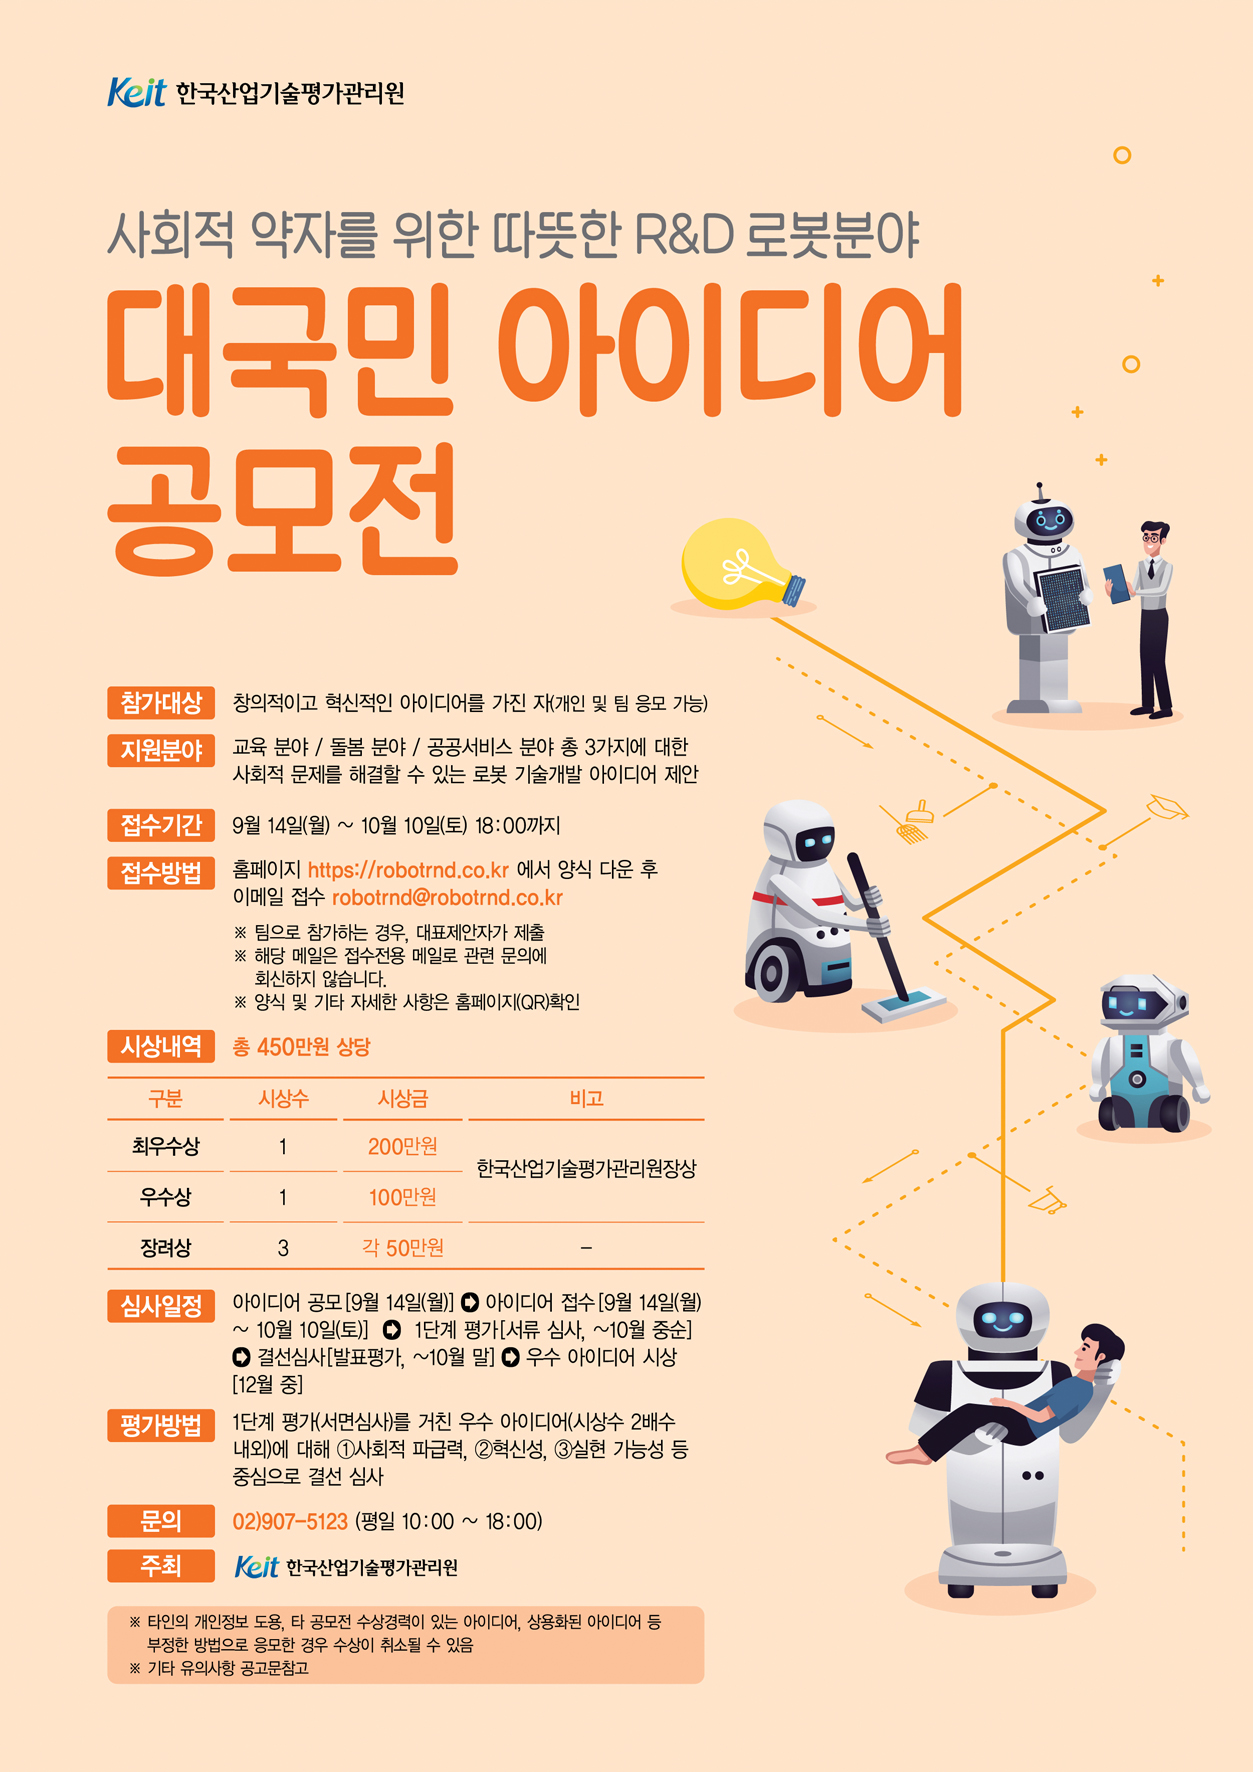 1. 한국산업기술평가관리원(KEIT)은 감염병 확산 위험에도 사회적 취약계층의 교육·돌봄 서비스가 지속되어 사회적 문제를 해결할 수 있는 로봇활용 비대면 서비스 분야의 창의적이고 혁신적인 아이디어를 적극 발굴하여 로봇분야 기술개발사업 테마 도출 등에 활용하기 위해 '사회적 약자를 위한 따뜻한 로봇 R&D 대국민 아이디어 공모전'을 개최한다. 2. 공모 내용ㅇ 지속적인 교육·돌봄·공공 서비스를 제공할 수 있는 로봇활용 비대면 서비스 분야로 관련 산업의 패러다임을 변화시키며 경제적, 사회적 파급효과가 매우 큰 미래 유망기술(제품)에 대한 혁신적 아이디어 접수 * 제안자(개인 및 팀)는 여러 개의 아이디어 응모 가능 3. 응모 자격 : 창의적이고 혁신적인 아이디어를 가진 자ㅇ 개인 및 팀 응모 가능 4. 접수 기간 : 2020.9.14.(월) ~ 10.10.(토) 18시까지* 이메일 수신 시간을 기준으로 함5. 응모 방법 : 이메일 접수(robotrnd@robotrnd.co.kr)* 팀으로 제안하는 경우, 대표 제안자가 제출 6. 시상규모 : 우수 아이디어에 대해 상장(원장상) 및 상금(총 450만원)7. 문의처 : 02 - 907 - 5123 (마이스구루)